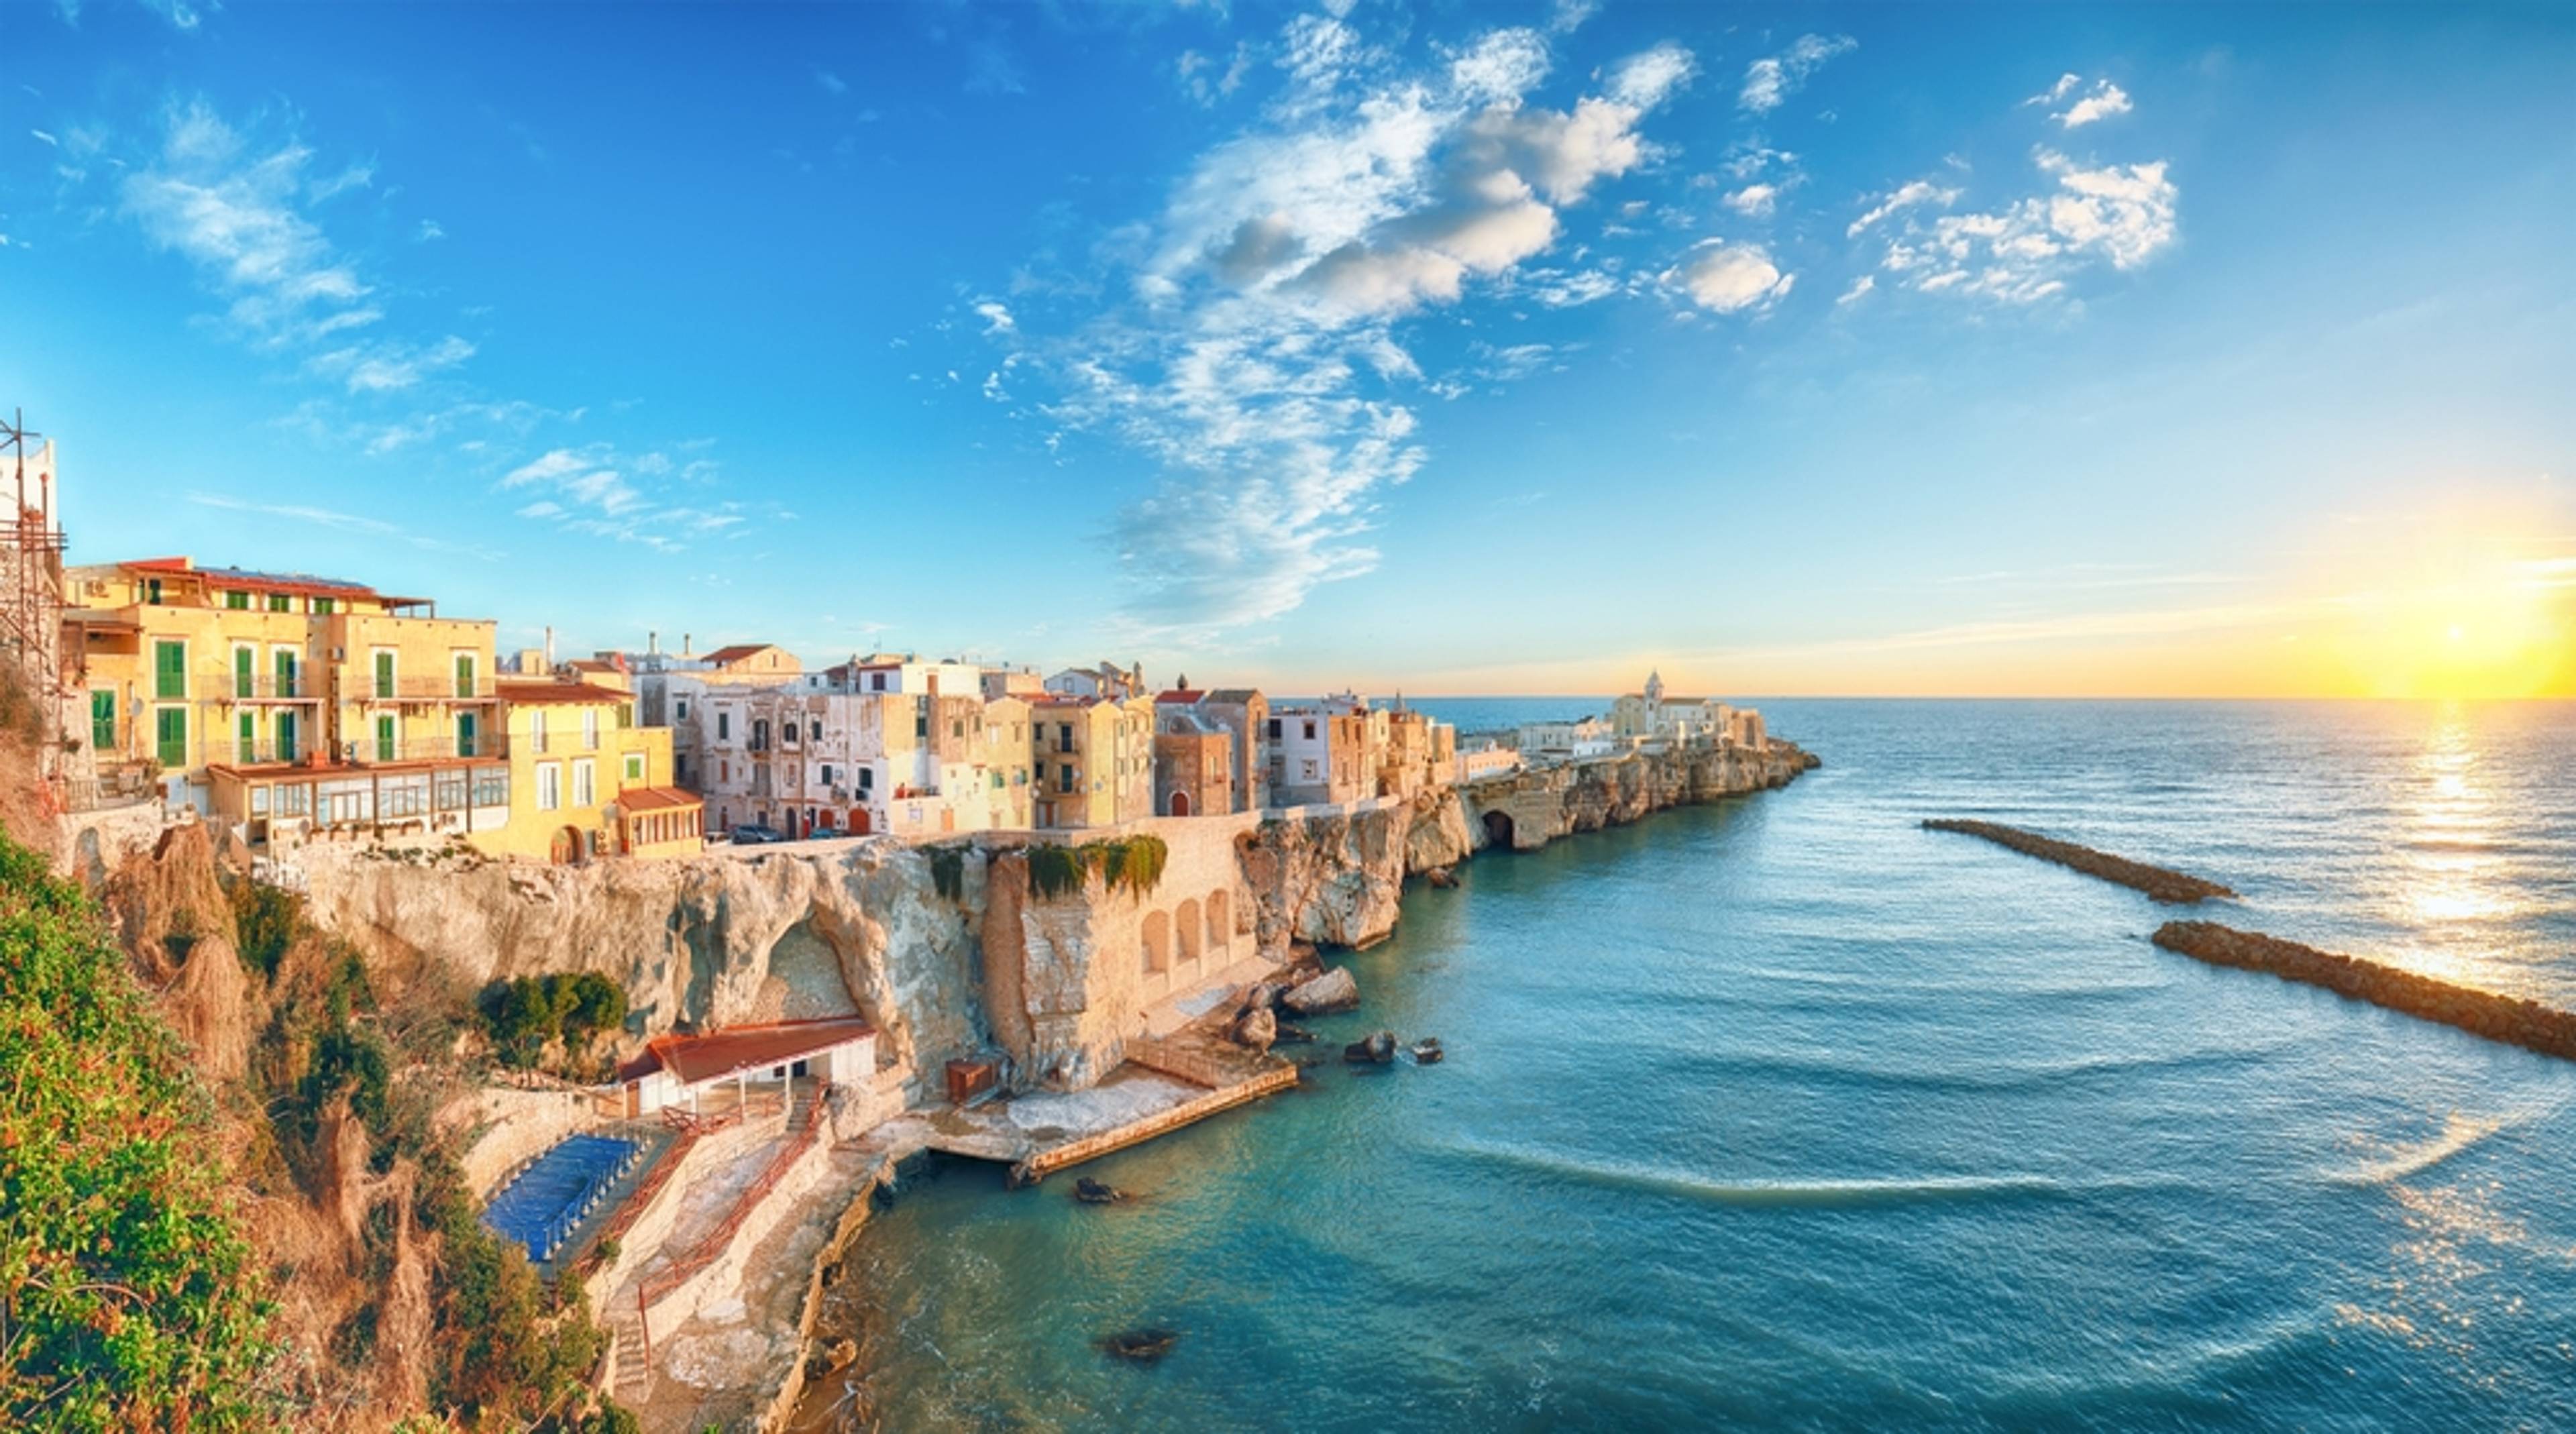 Jižní Itálie nabízí nekonečné možnosti zážitků